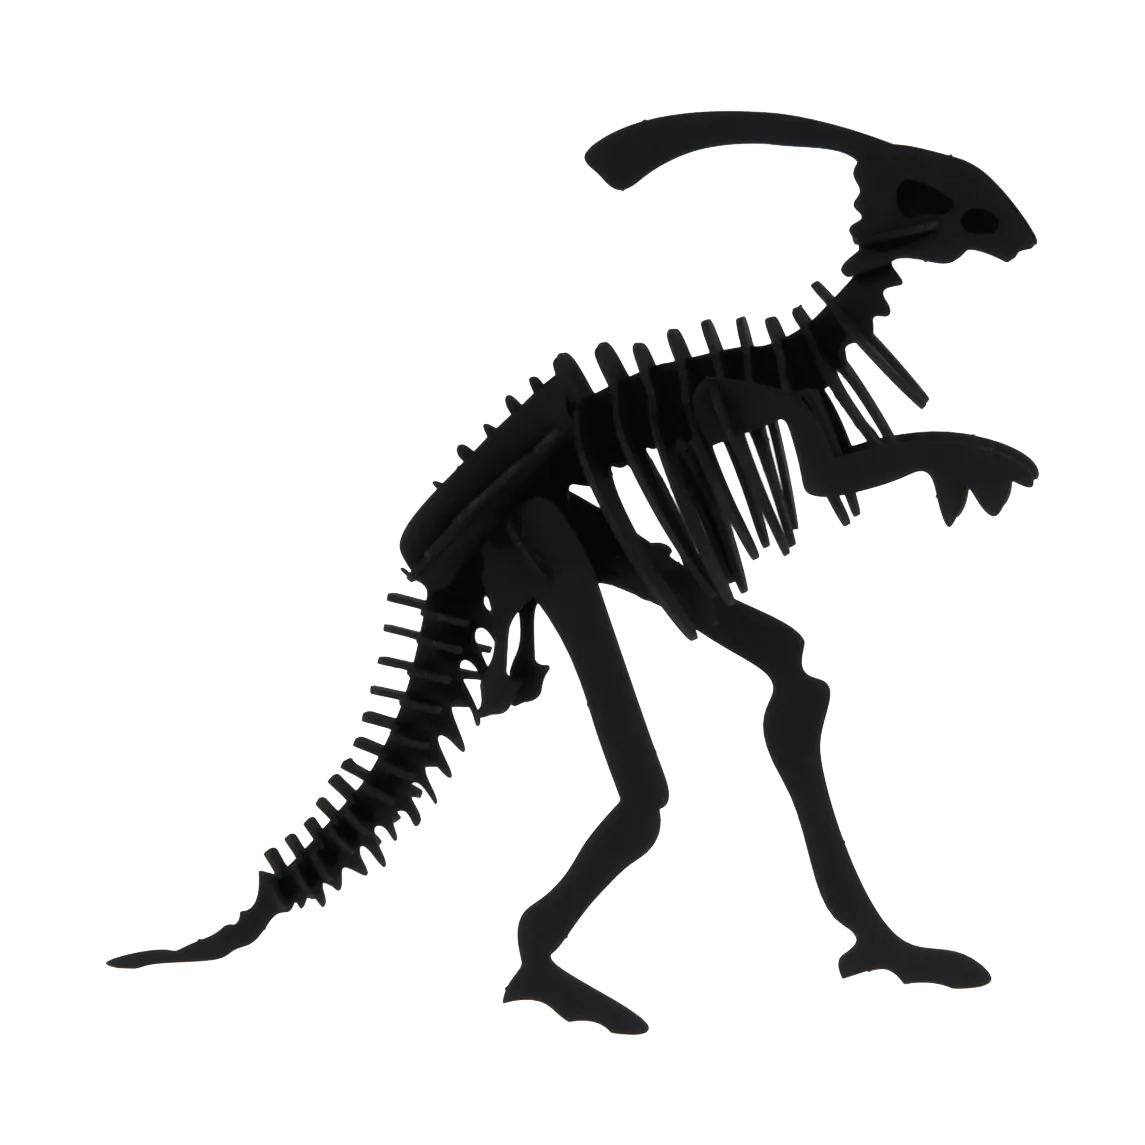 3D Papiermodell / Parasaurolophus